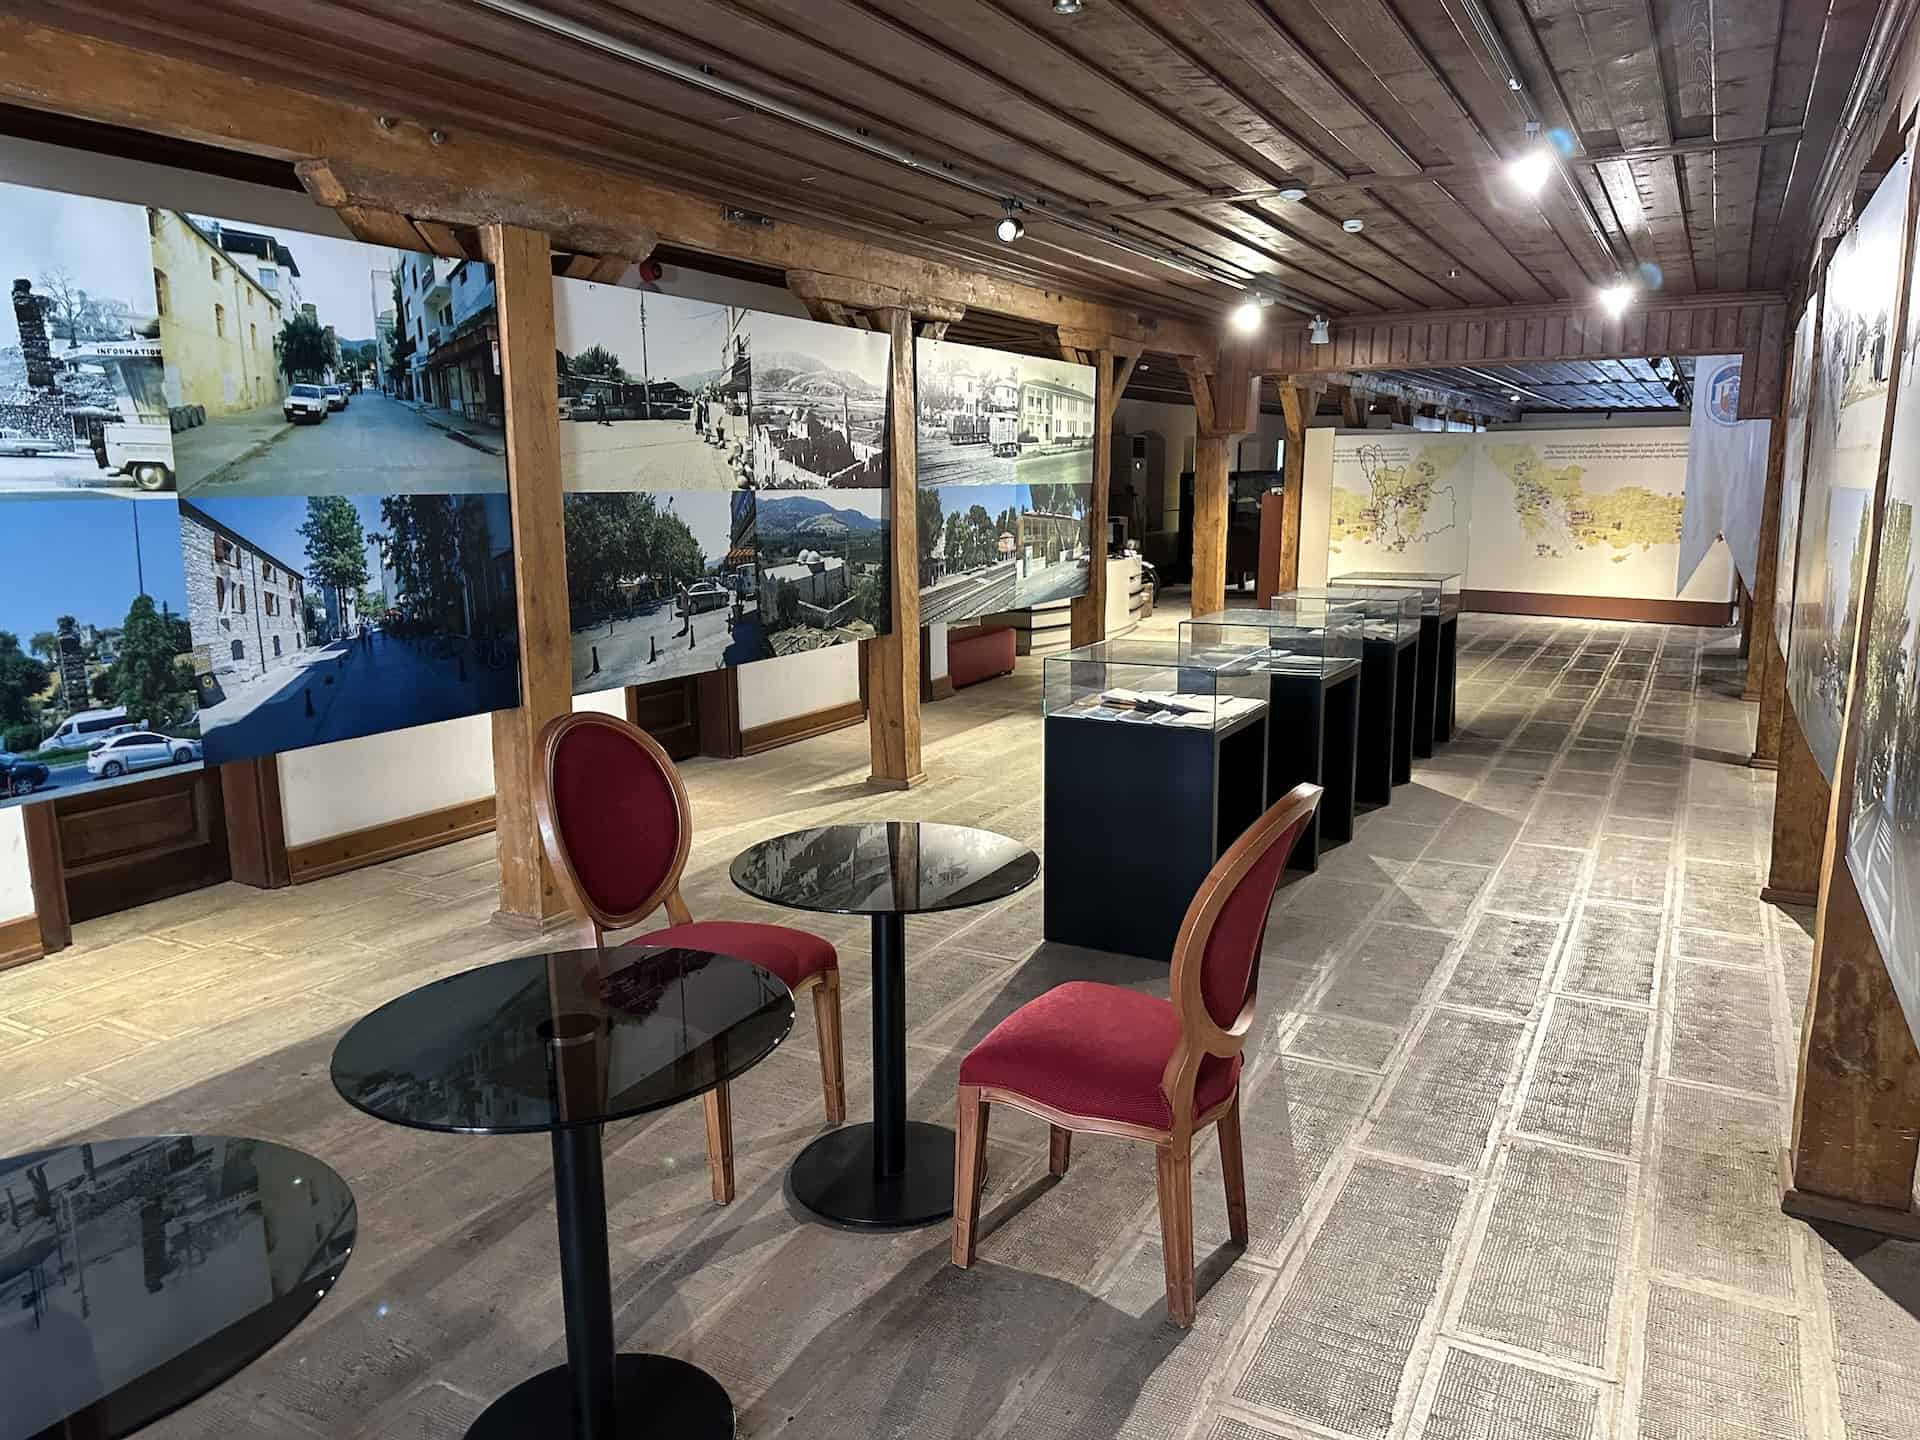 Photos of Selçuk at the Selçuk City Memory Museum